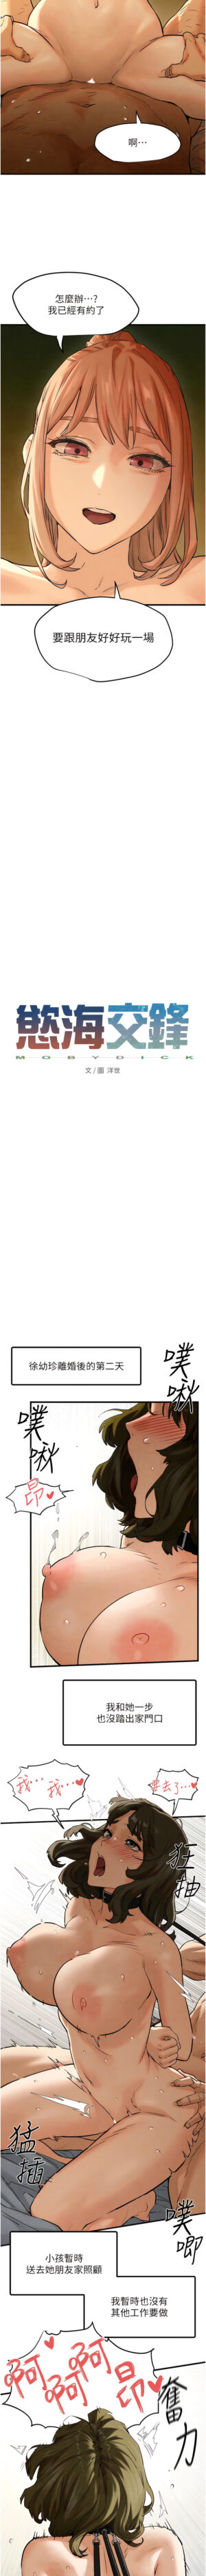 [洋世] 欲海交鋒 | 欲海交锋 1-15 [Chinese] [Ongoing]